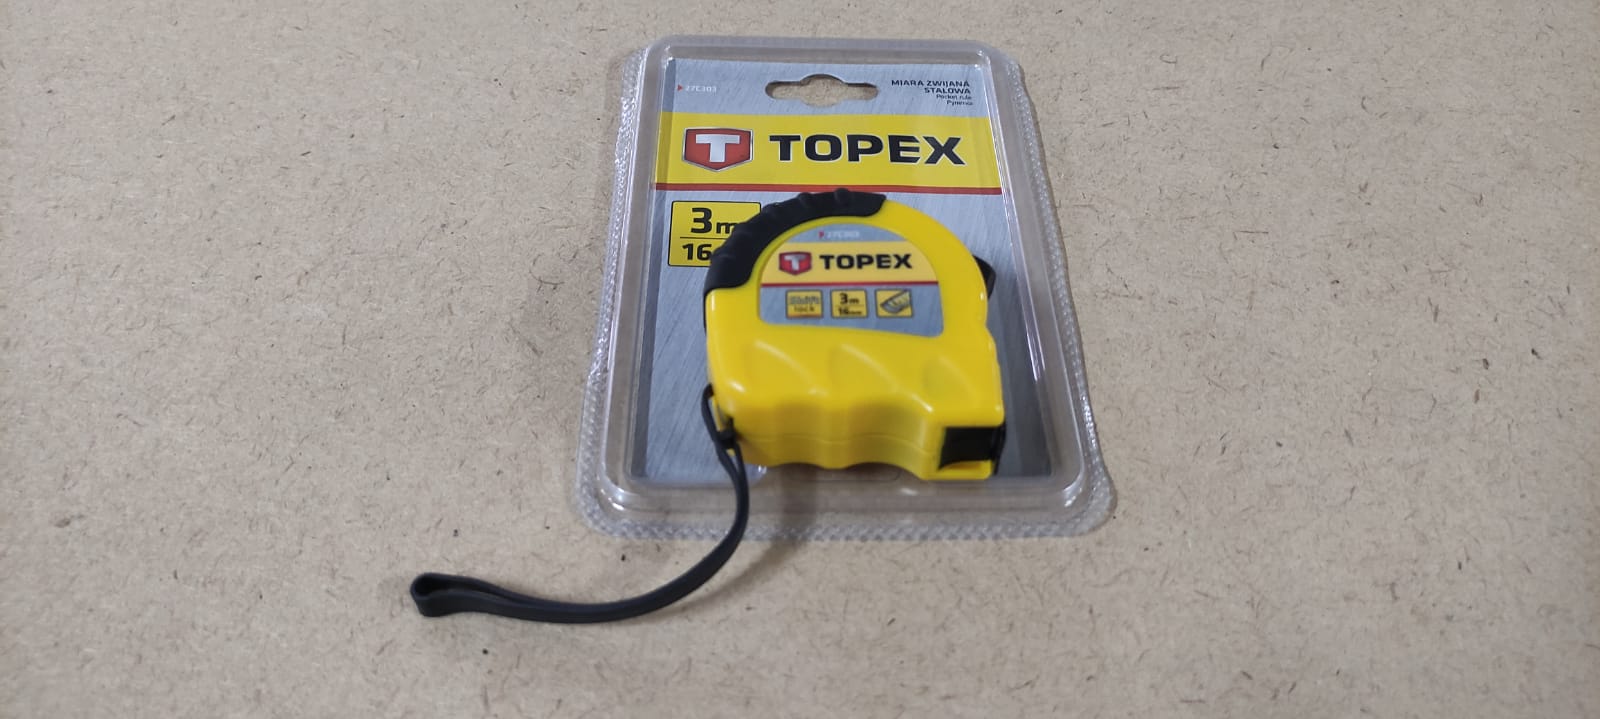 Строительная измерительная рулетка TOPEX, стальная лента 3м x 16 мм